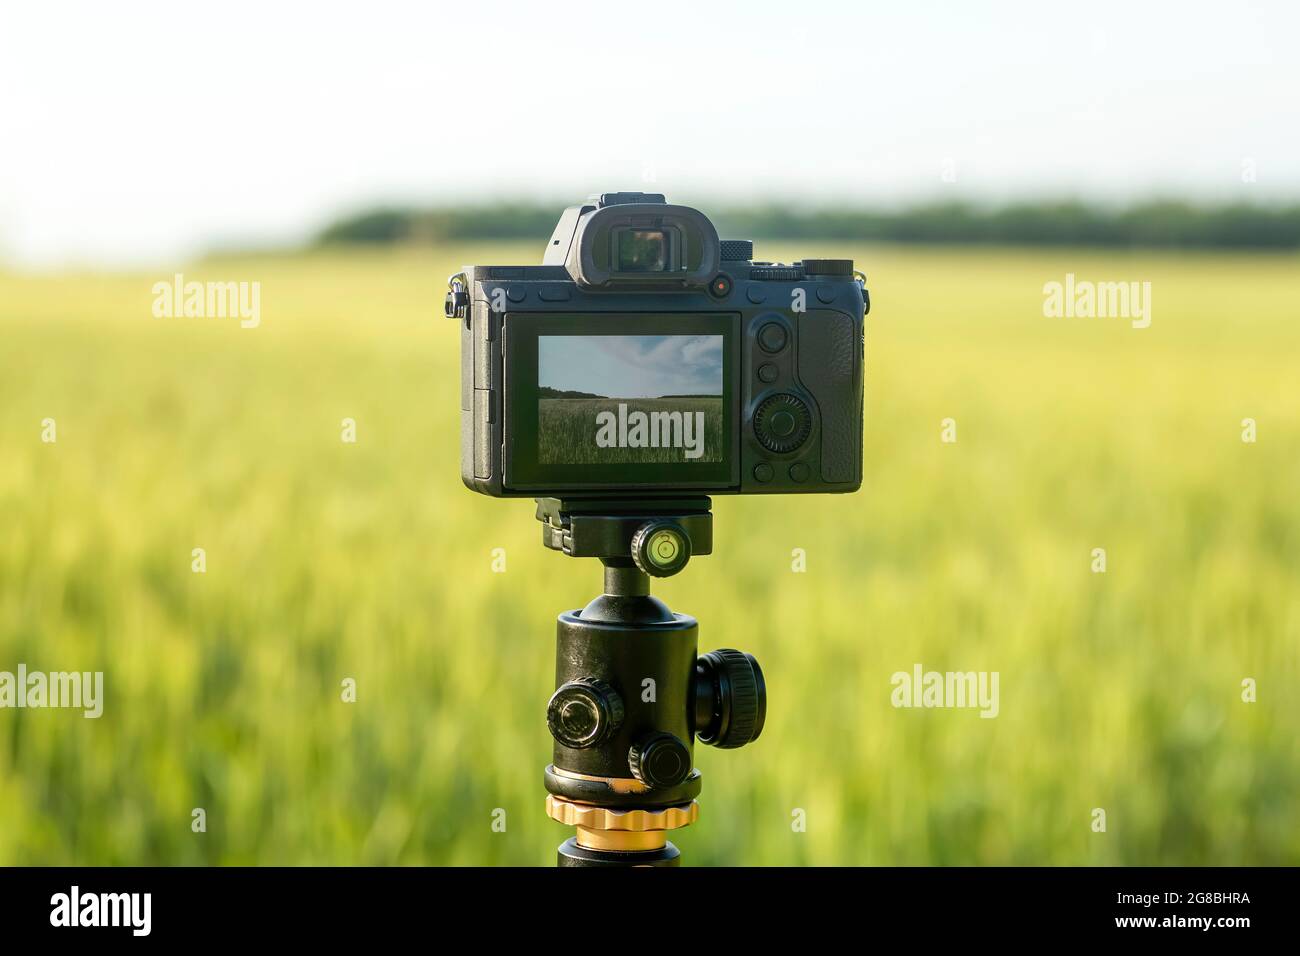 Una cámara con una lente en un trípode, lista para tomar fotos o vídeos en  la naturaleza. Fotografiar y filmar paisajes, vida silvestre. Fotografías  de alta calidad Fotografía de stock - Alamy